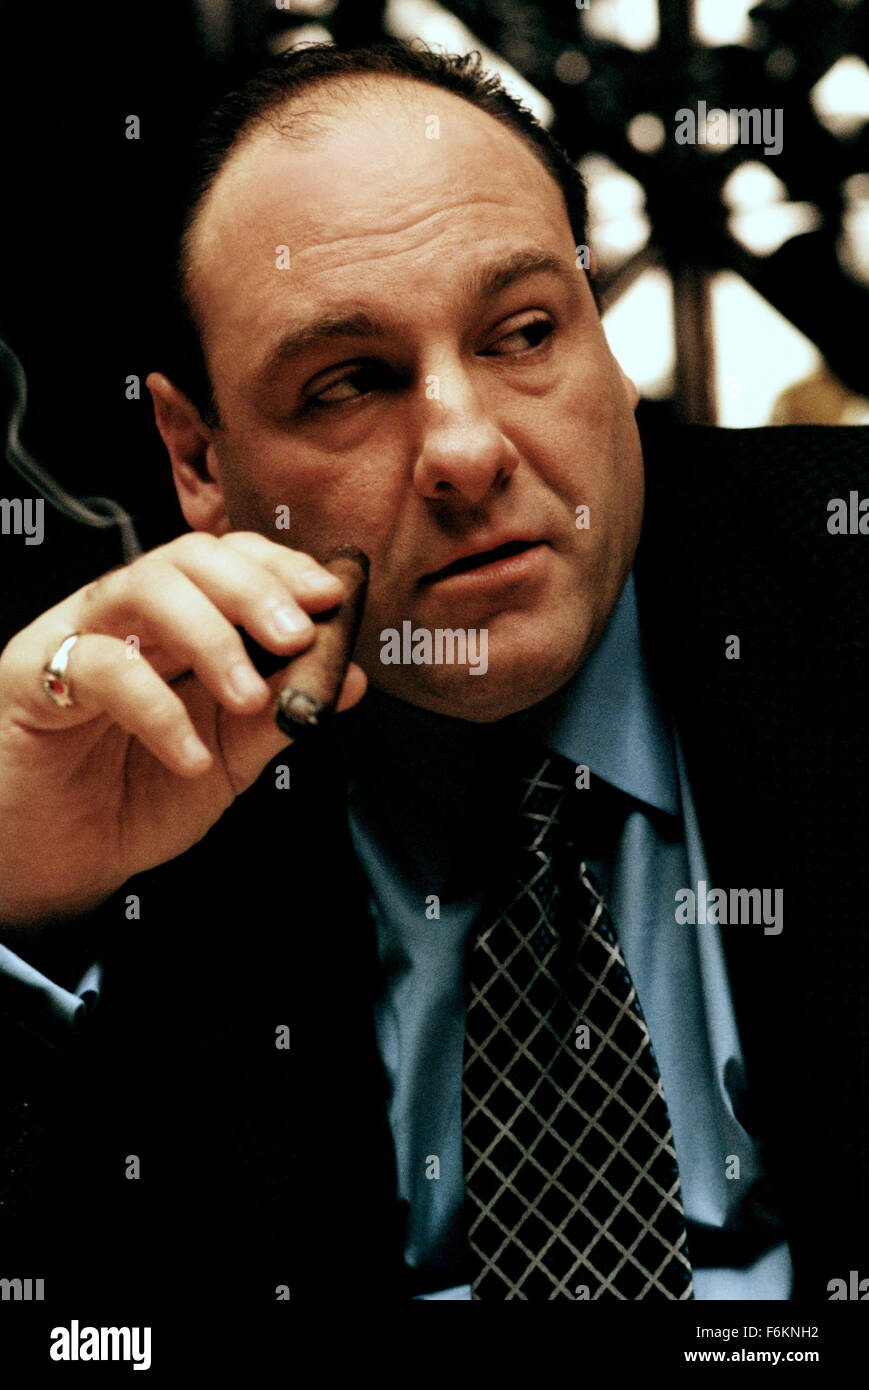 Giugno 19, 2013 - file - James Gandolfini, stella di HBO la ''i soprani' è morto di un attacco di cuore a Roma. Egli è stato 51. Gandolfino era noto per il suo ruolo come Tony Soprano nella serie HBO 'i soprani." Nella foto: JAMES GANDOLFINI come New Jersey-base mafioso italo-americano Tony Soprano. (Credito Immagine: c HBO/Entertainment Immagini) Foto Stock